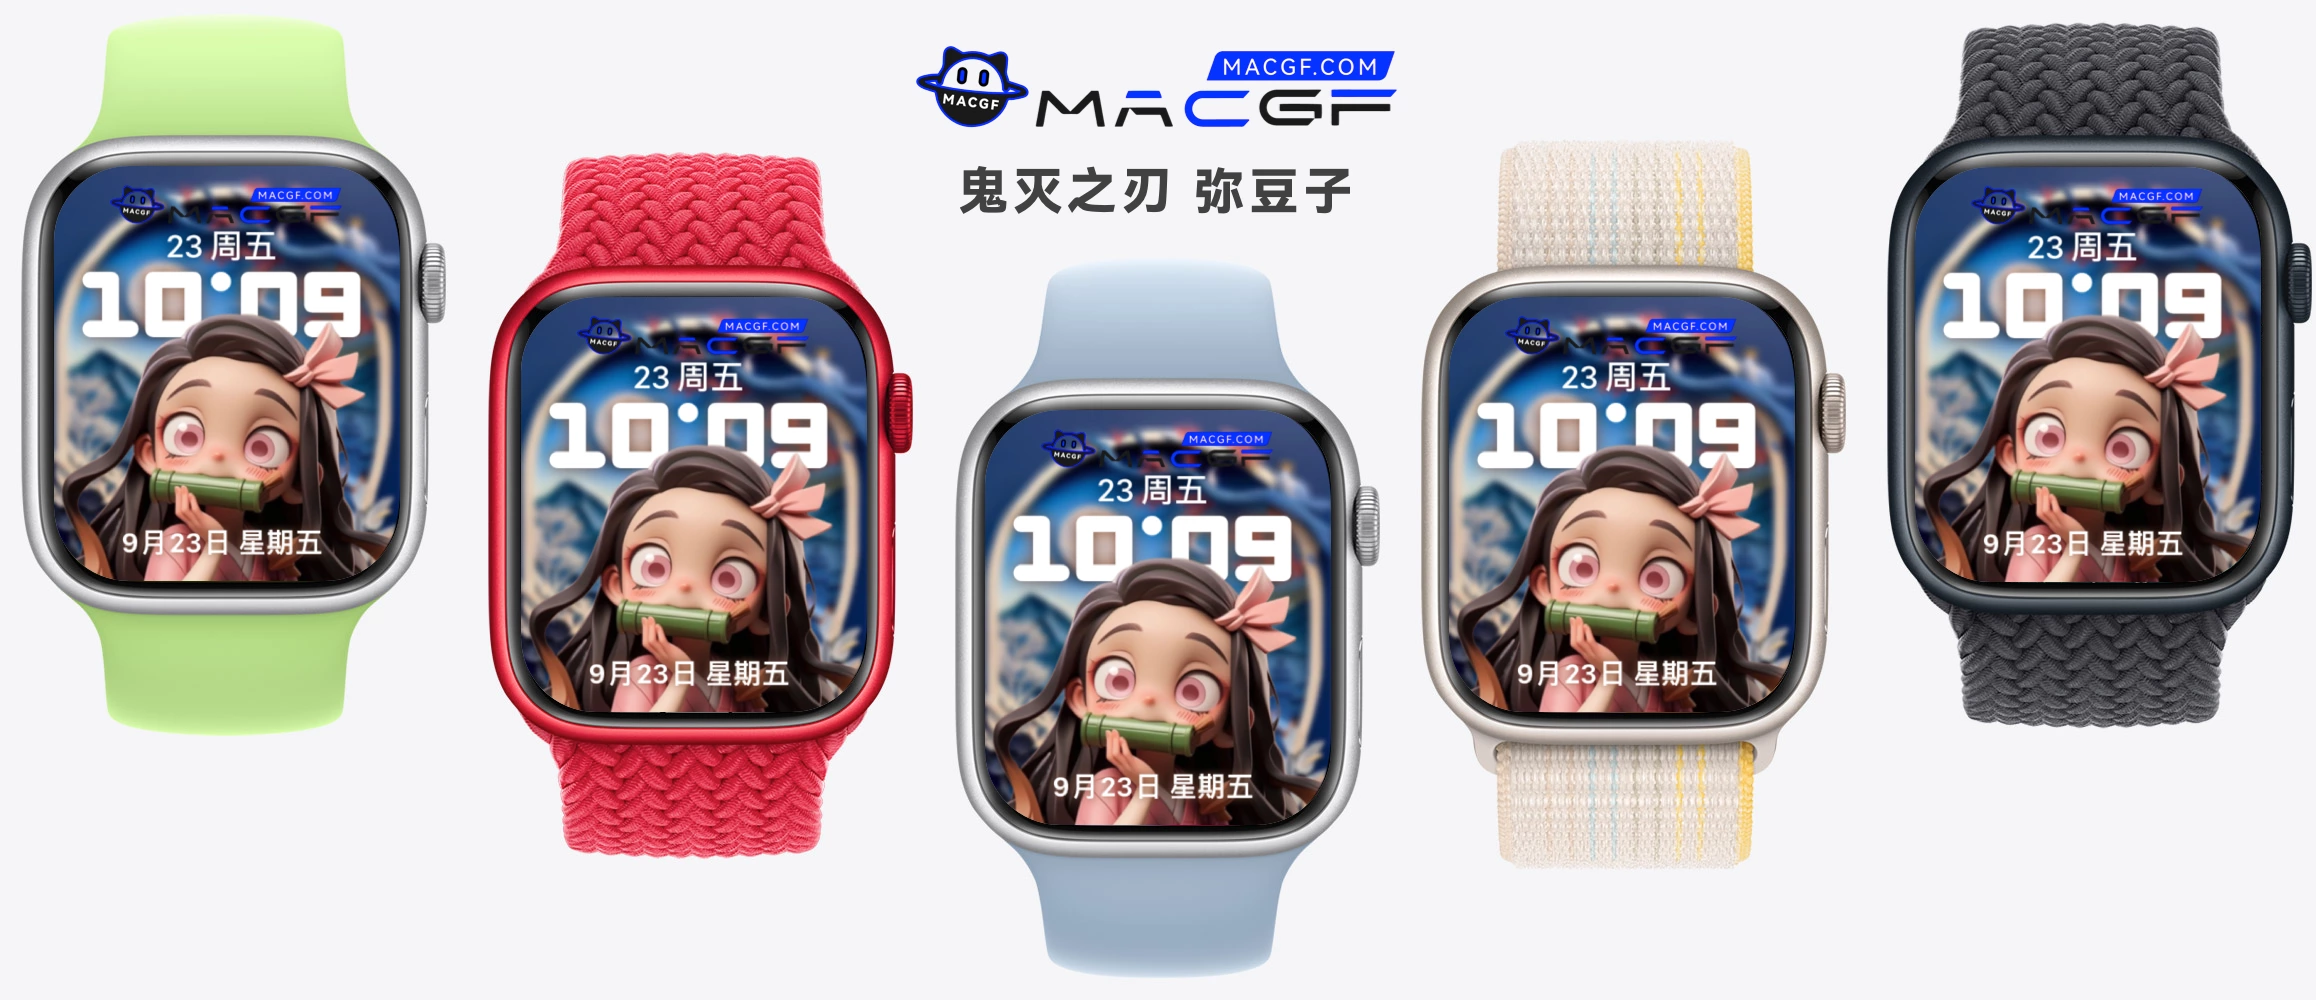 鬼灭之刃 弥豆子 3D Apple watch 原生表盘 - macGF